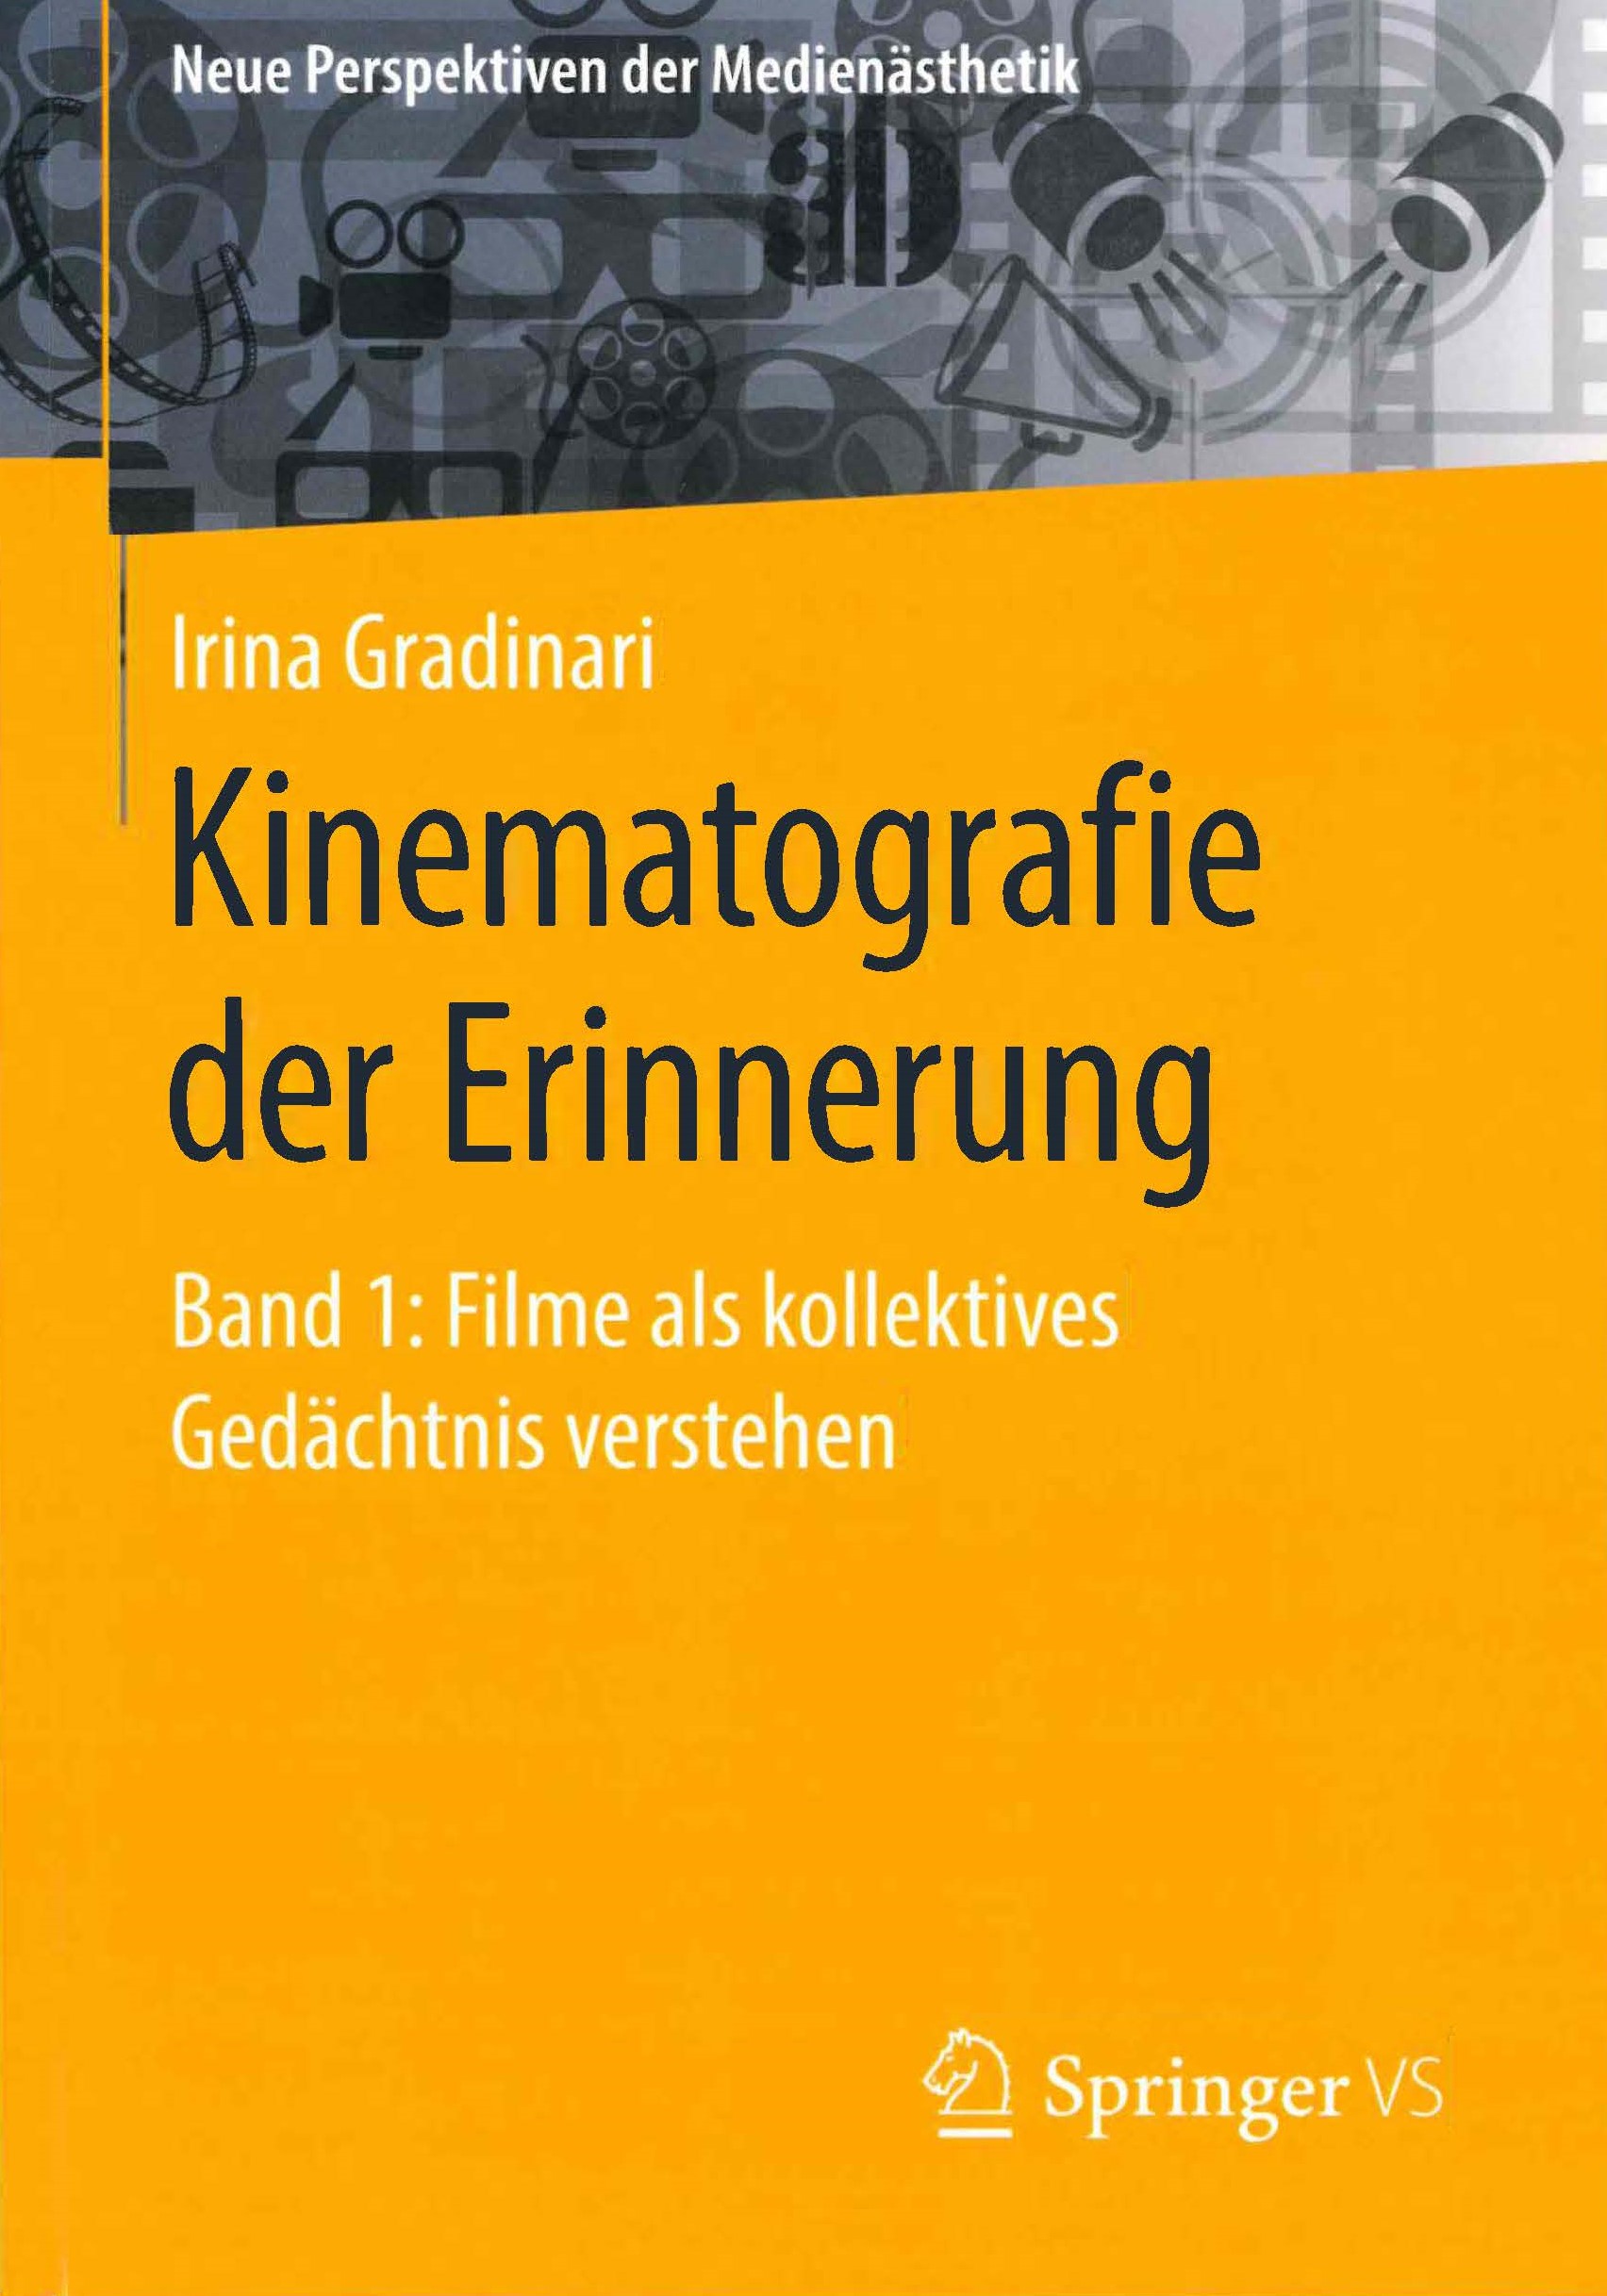 Buchcover: "Kinematografie der Erinnerung"